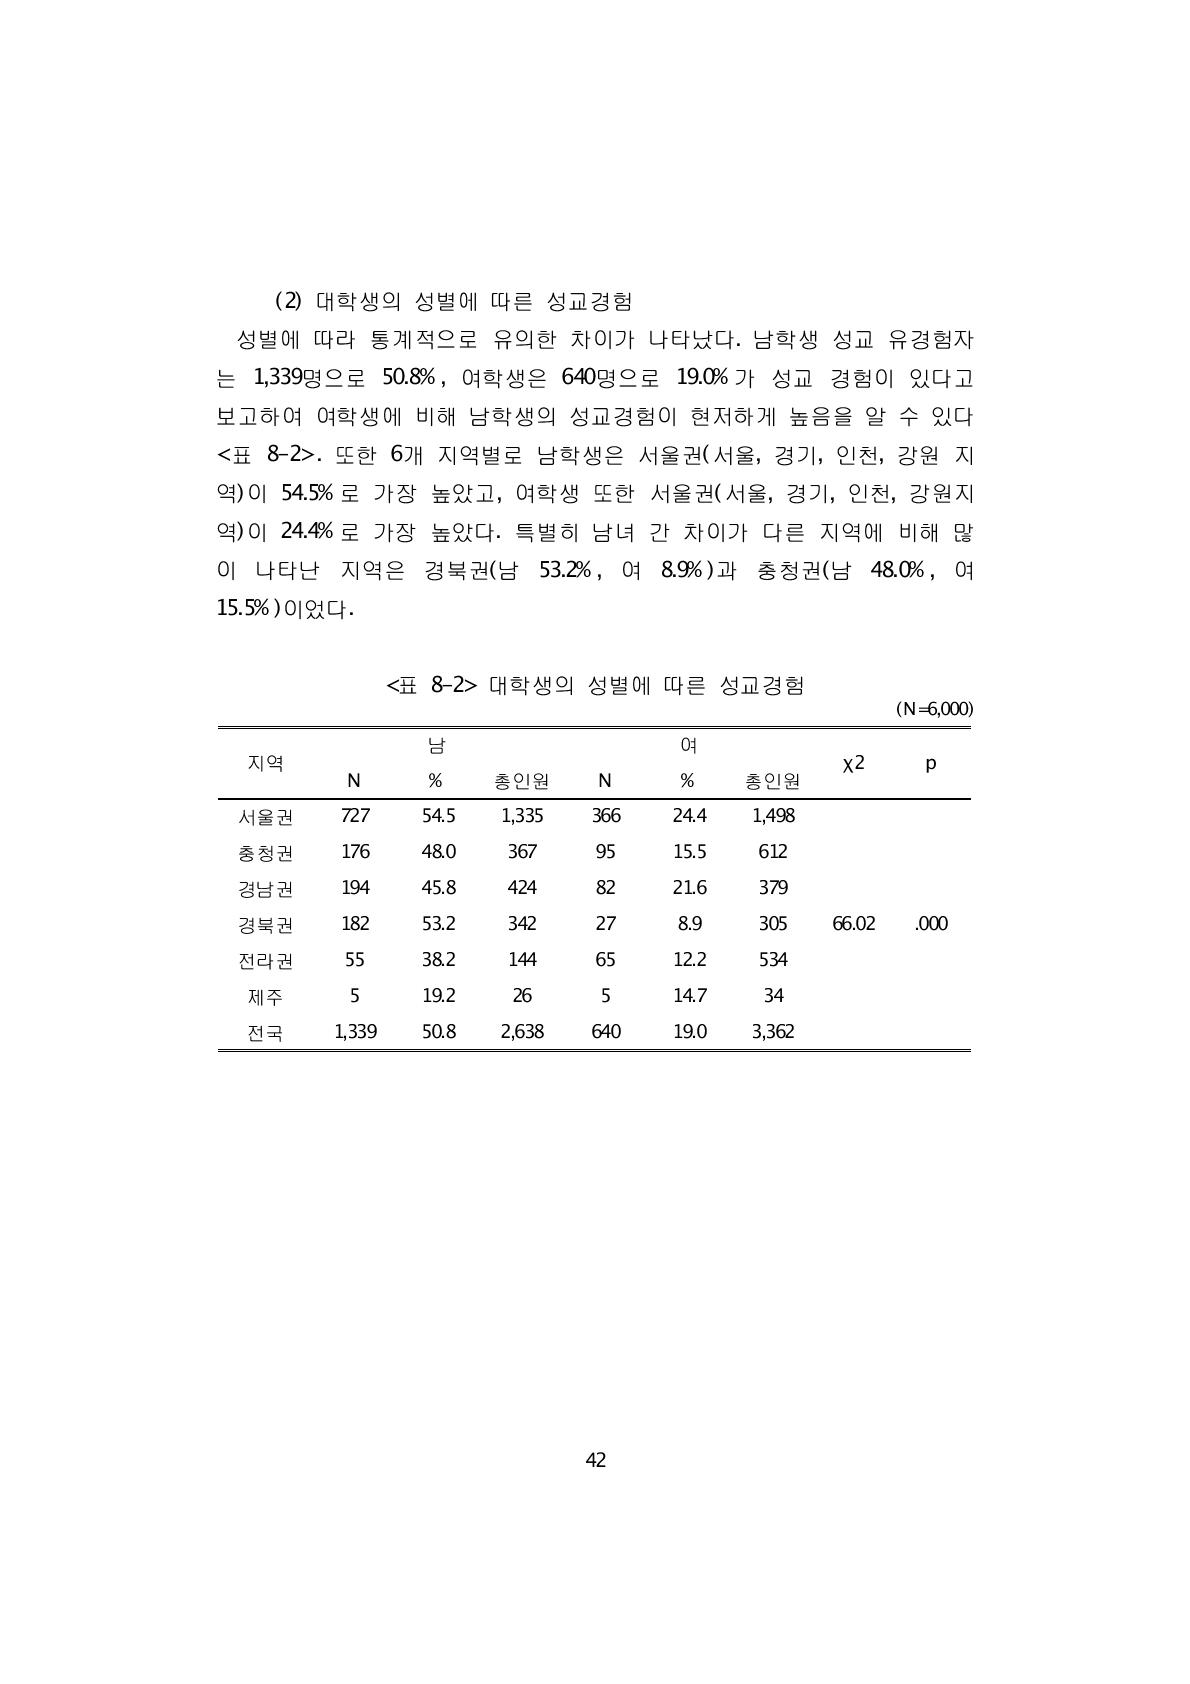 또한 6개 지역별로 남학생은 서울권(서울, 경기, 인천, 강원 지